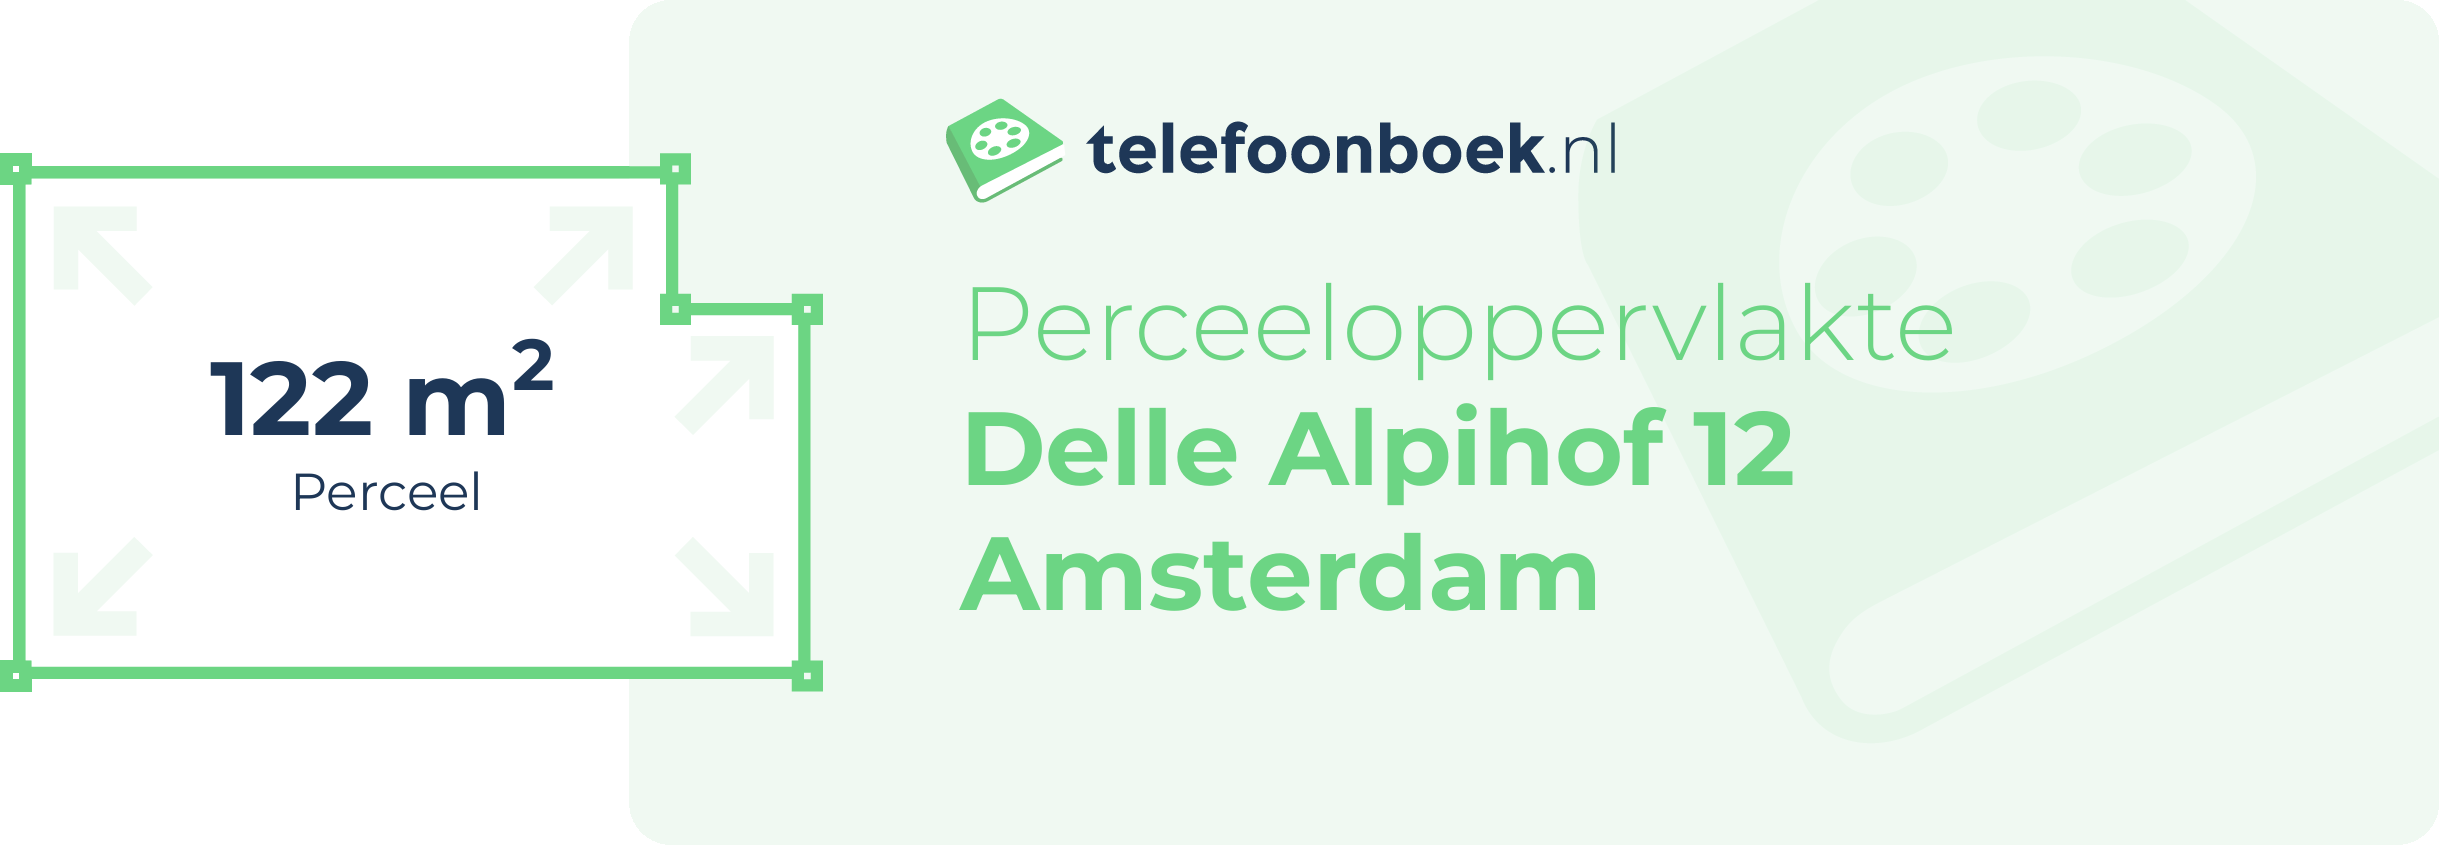 Perceeloppervlakte Delle Alpihof 12 Amsterdam